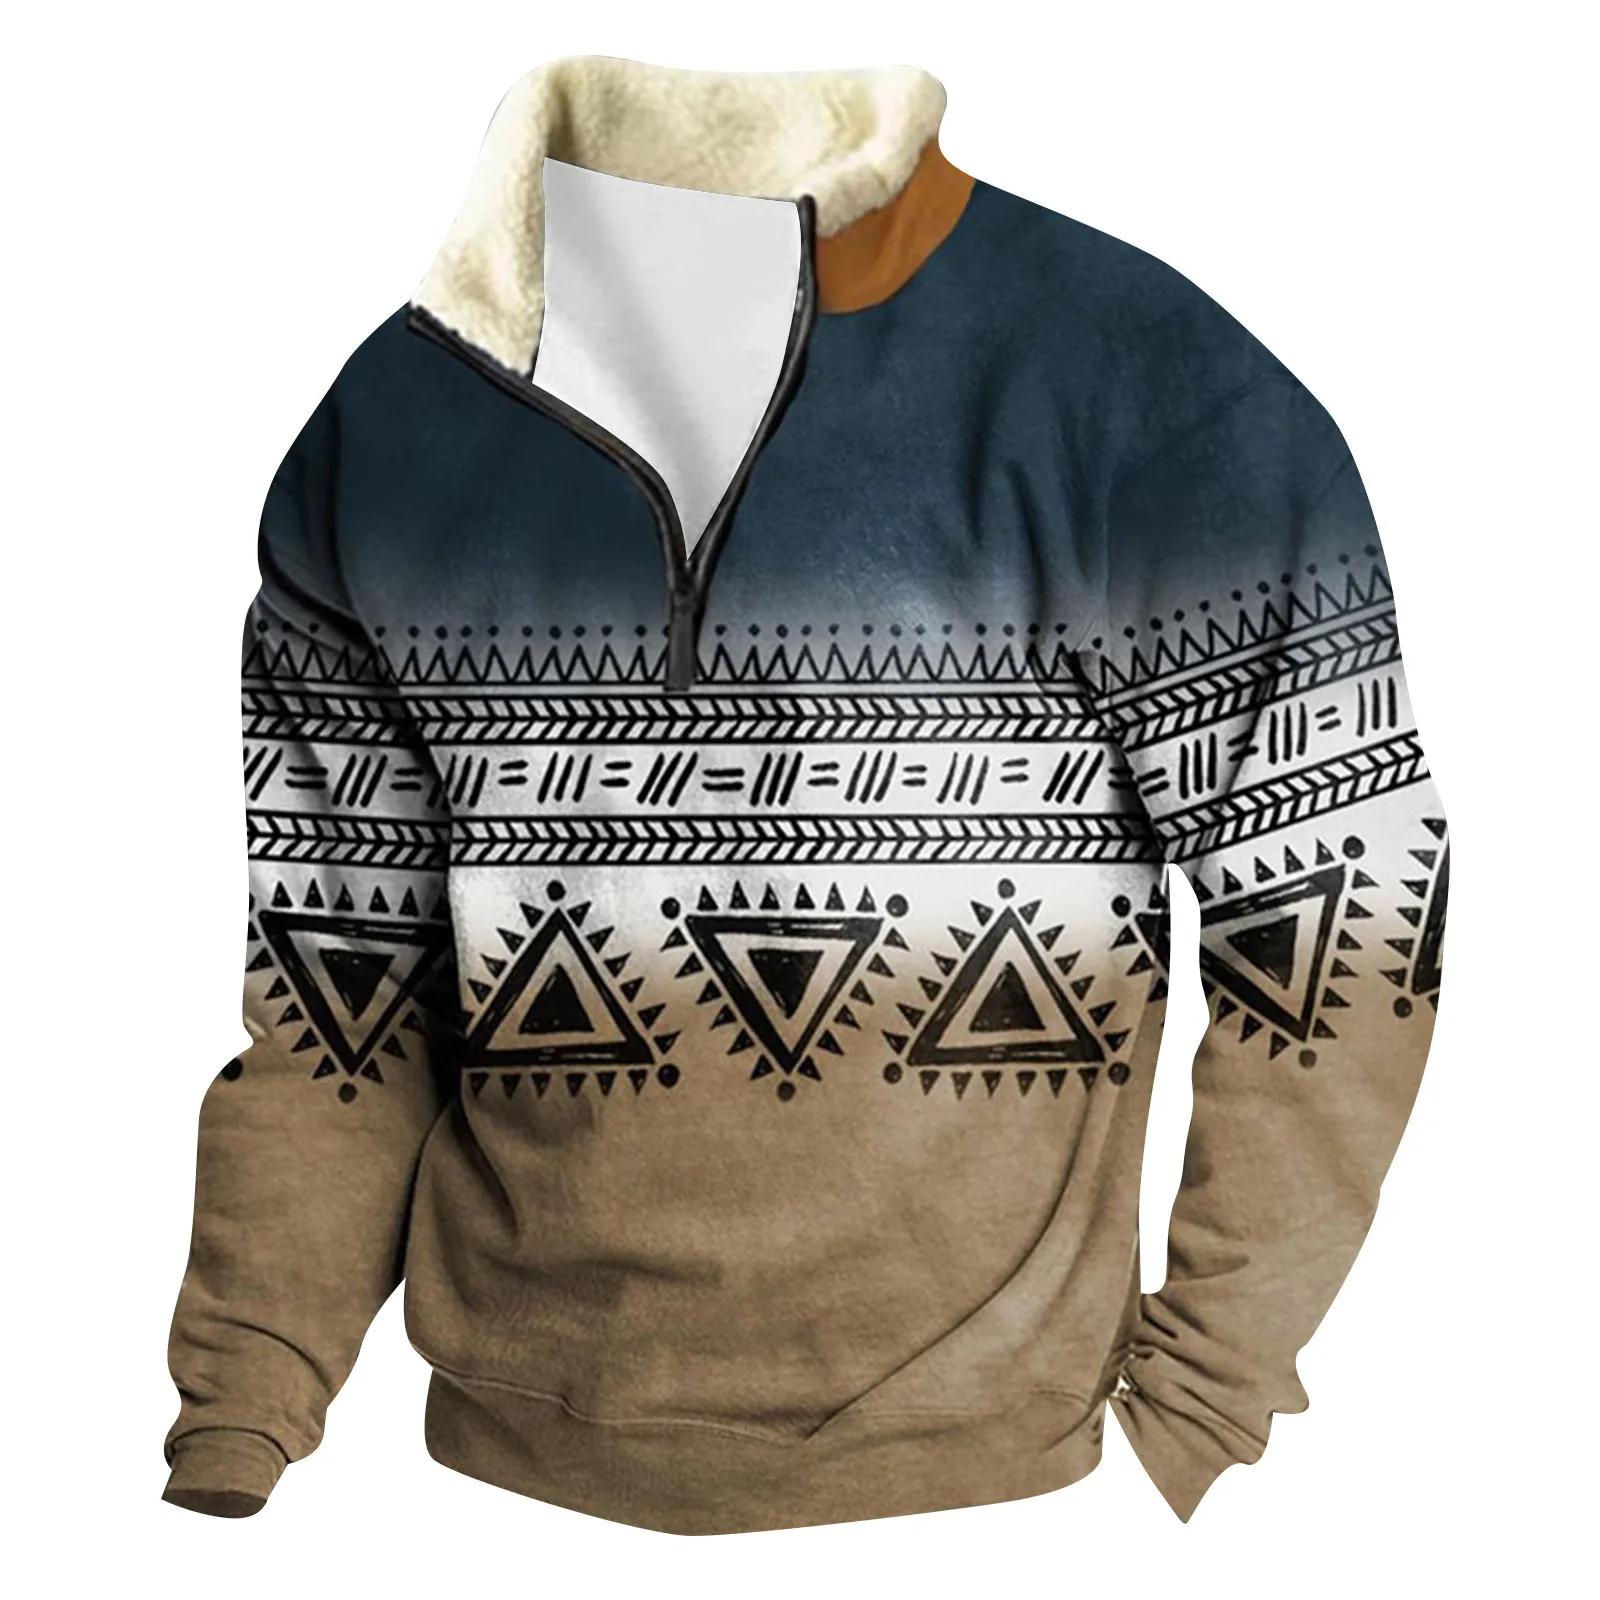 

Свитшот мужской с флисовой подкладкой, худи с длинным рукавом и винтажным принтом, пуловер свободного покроя, свитер на молнии, уличная одежда, осень-зима